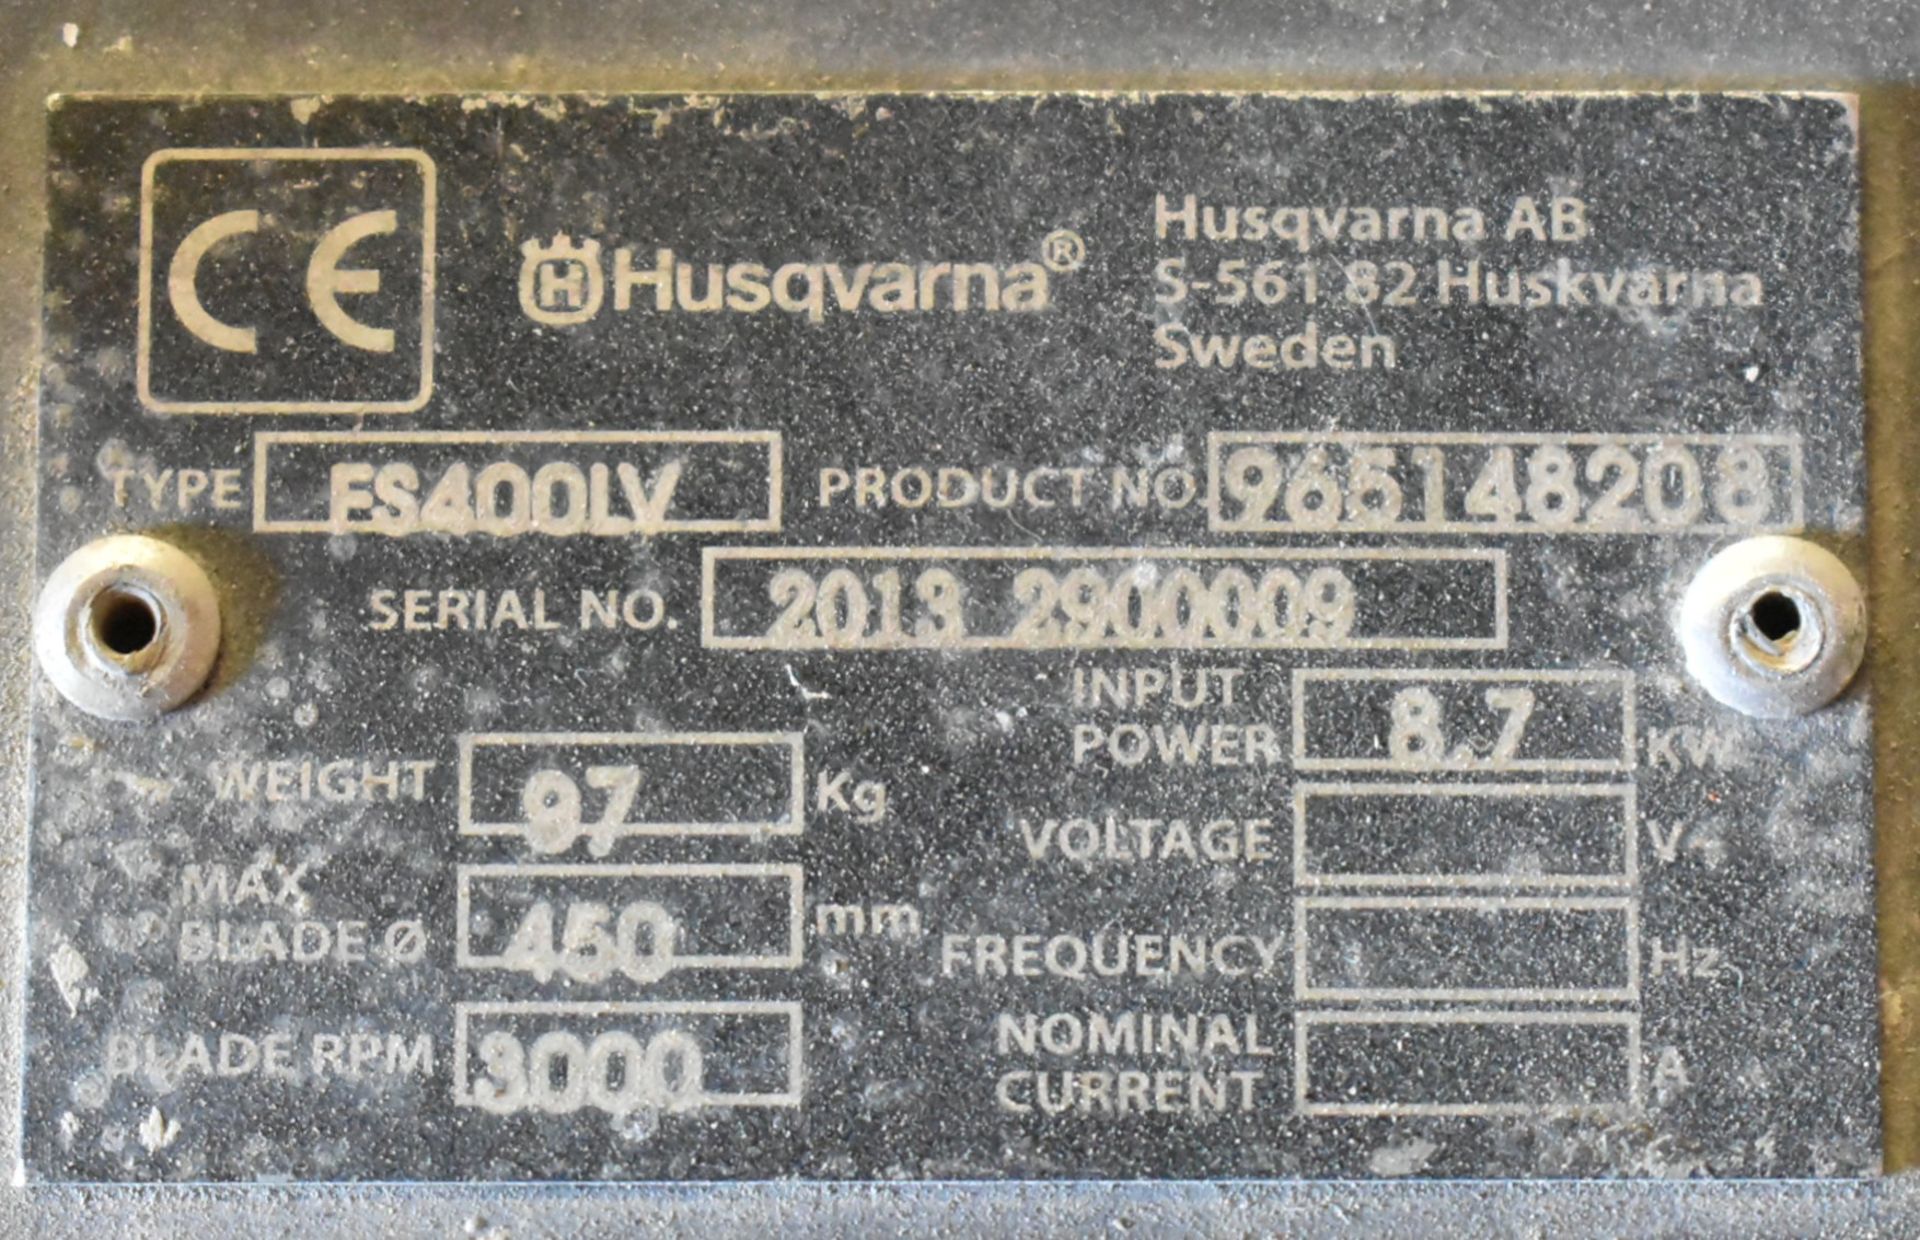 HUSQVARNA (2013) FS400LV 17" GAS POWERED WALK BEHIND CONCRETE SAW WITH SPEEDS TO 3,000 RPM, 11 HP - Bild 5 aus 5